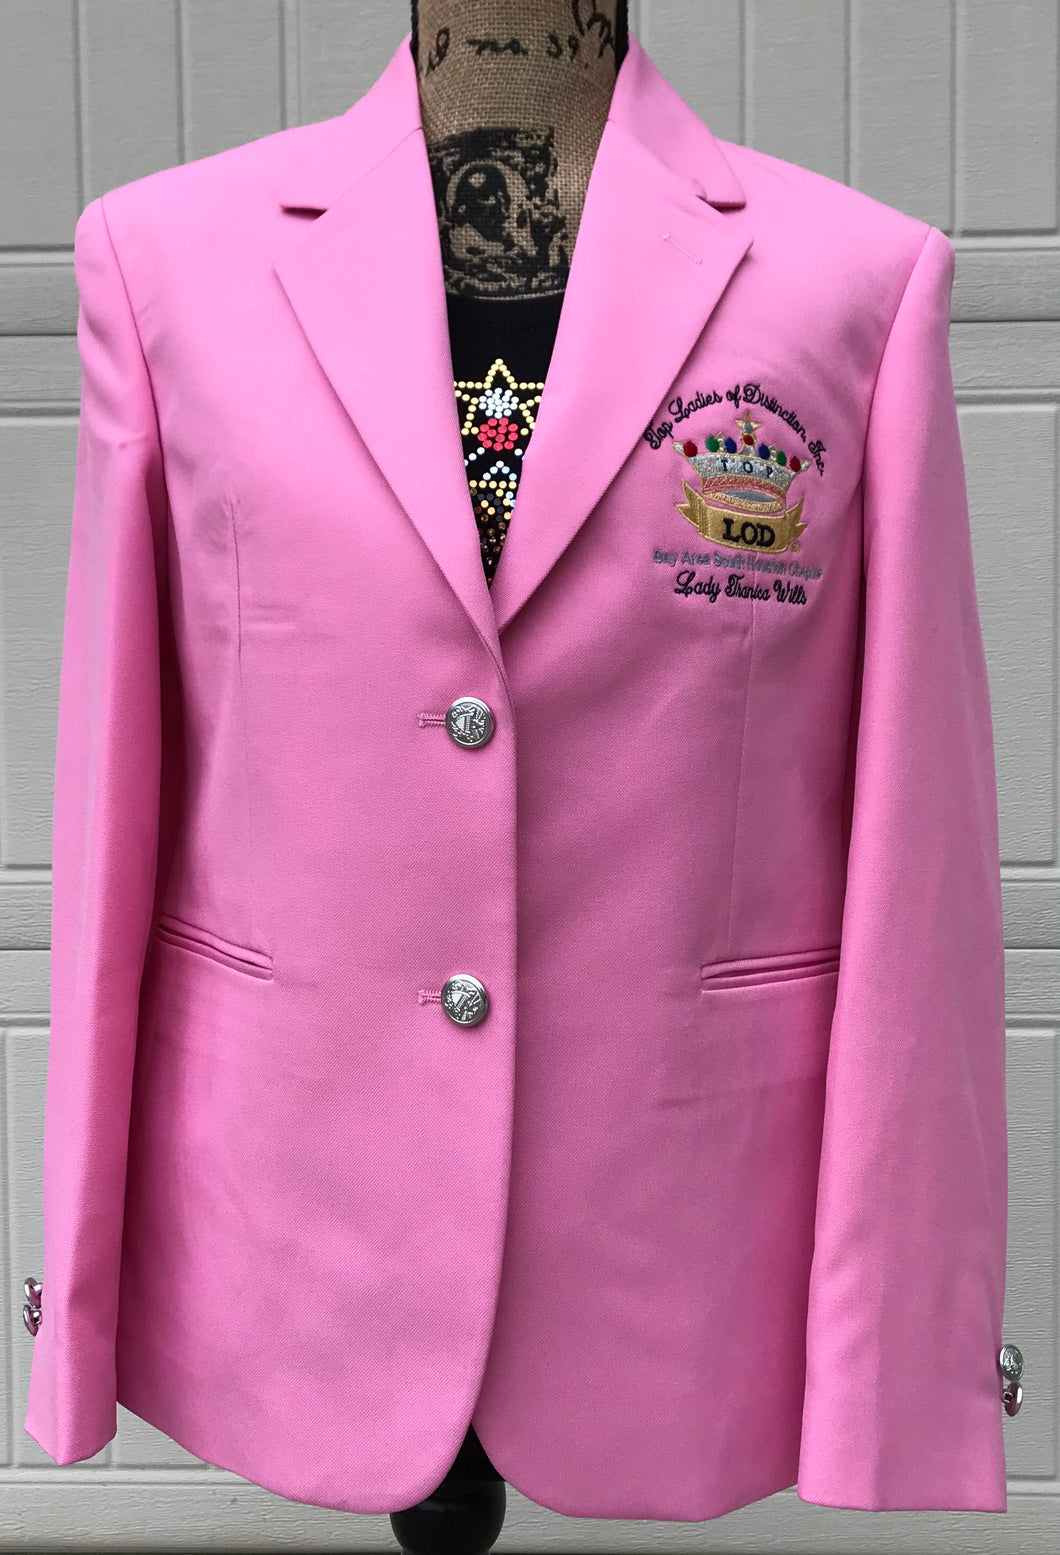 TLOD Pink Blazer Sizes 6-26